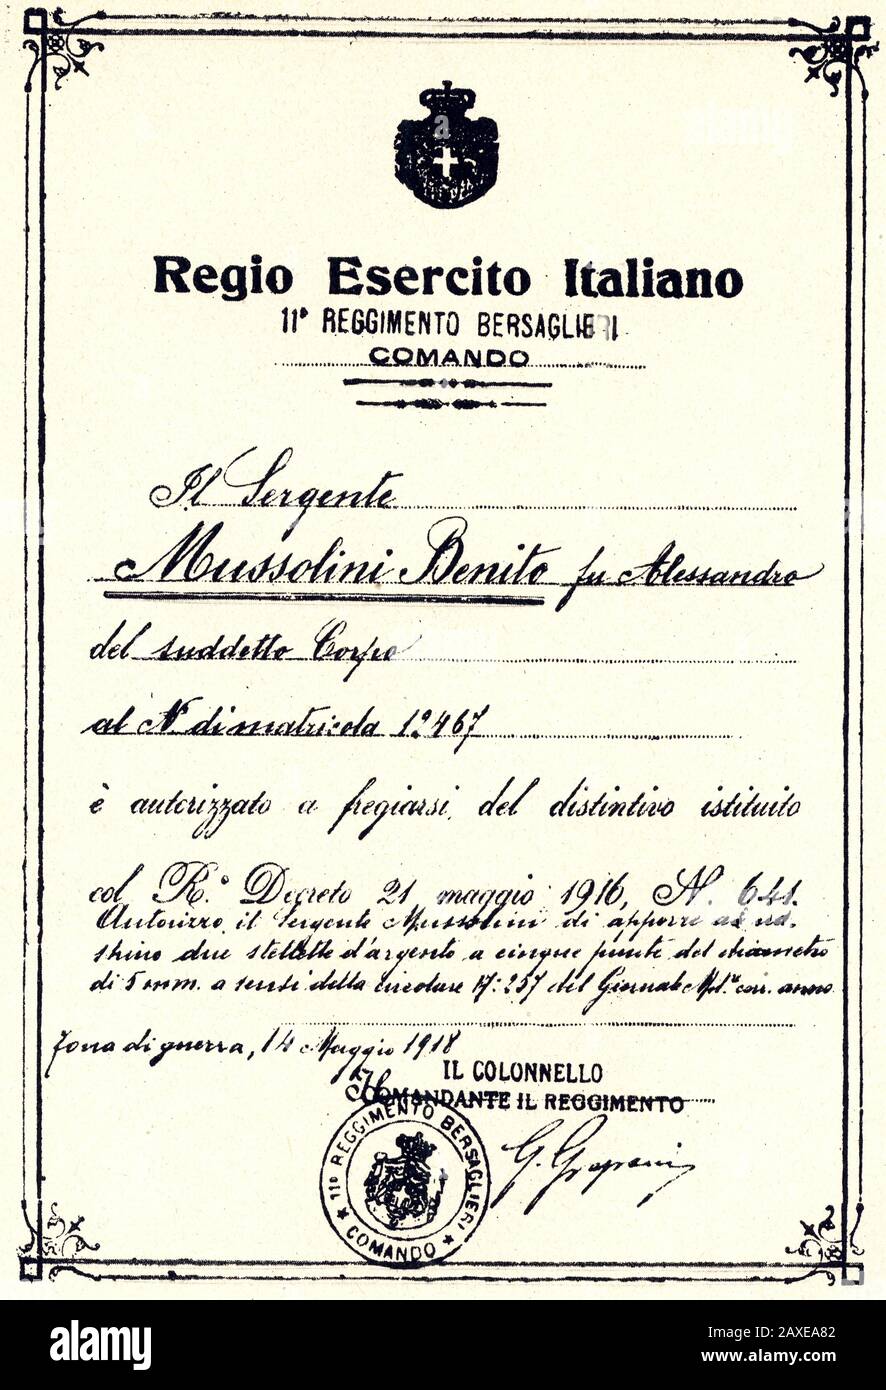 1918 , 14 marzo  , ITALY : The italian Fascist Duce BENITO MUSSOLINI ( Predappio, 29 july 1883 – Giulino di Mezzegra, 28 april 1945 ) , at last of  the Great War in military Bersaglieri corps obtain the graduation of SERGENT   - POLITICA - POLITICO -  ITALIA - POLITIC - portrait - ITALY - FASCISMO - FASCISM - FASCISTA - ITALIA   - personality personalities when was young  - personalita' da giovane giovani - BERSAGLIERE - divisa uniforme militare - baffi - moustache - WWI - WORD WAR I  - Prima Guerra Mondiale - Grande Guerra - BERSAGLIERE - BERSAGLIERI ---  Archivio GBB Stock Photo